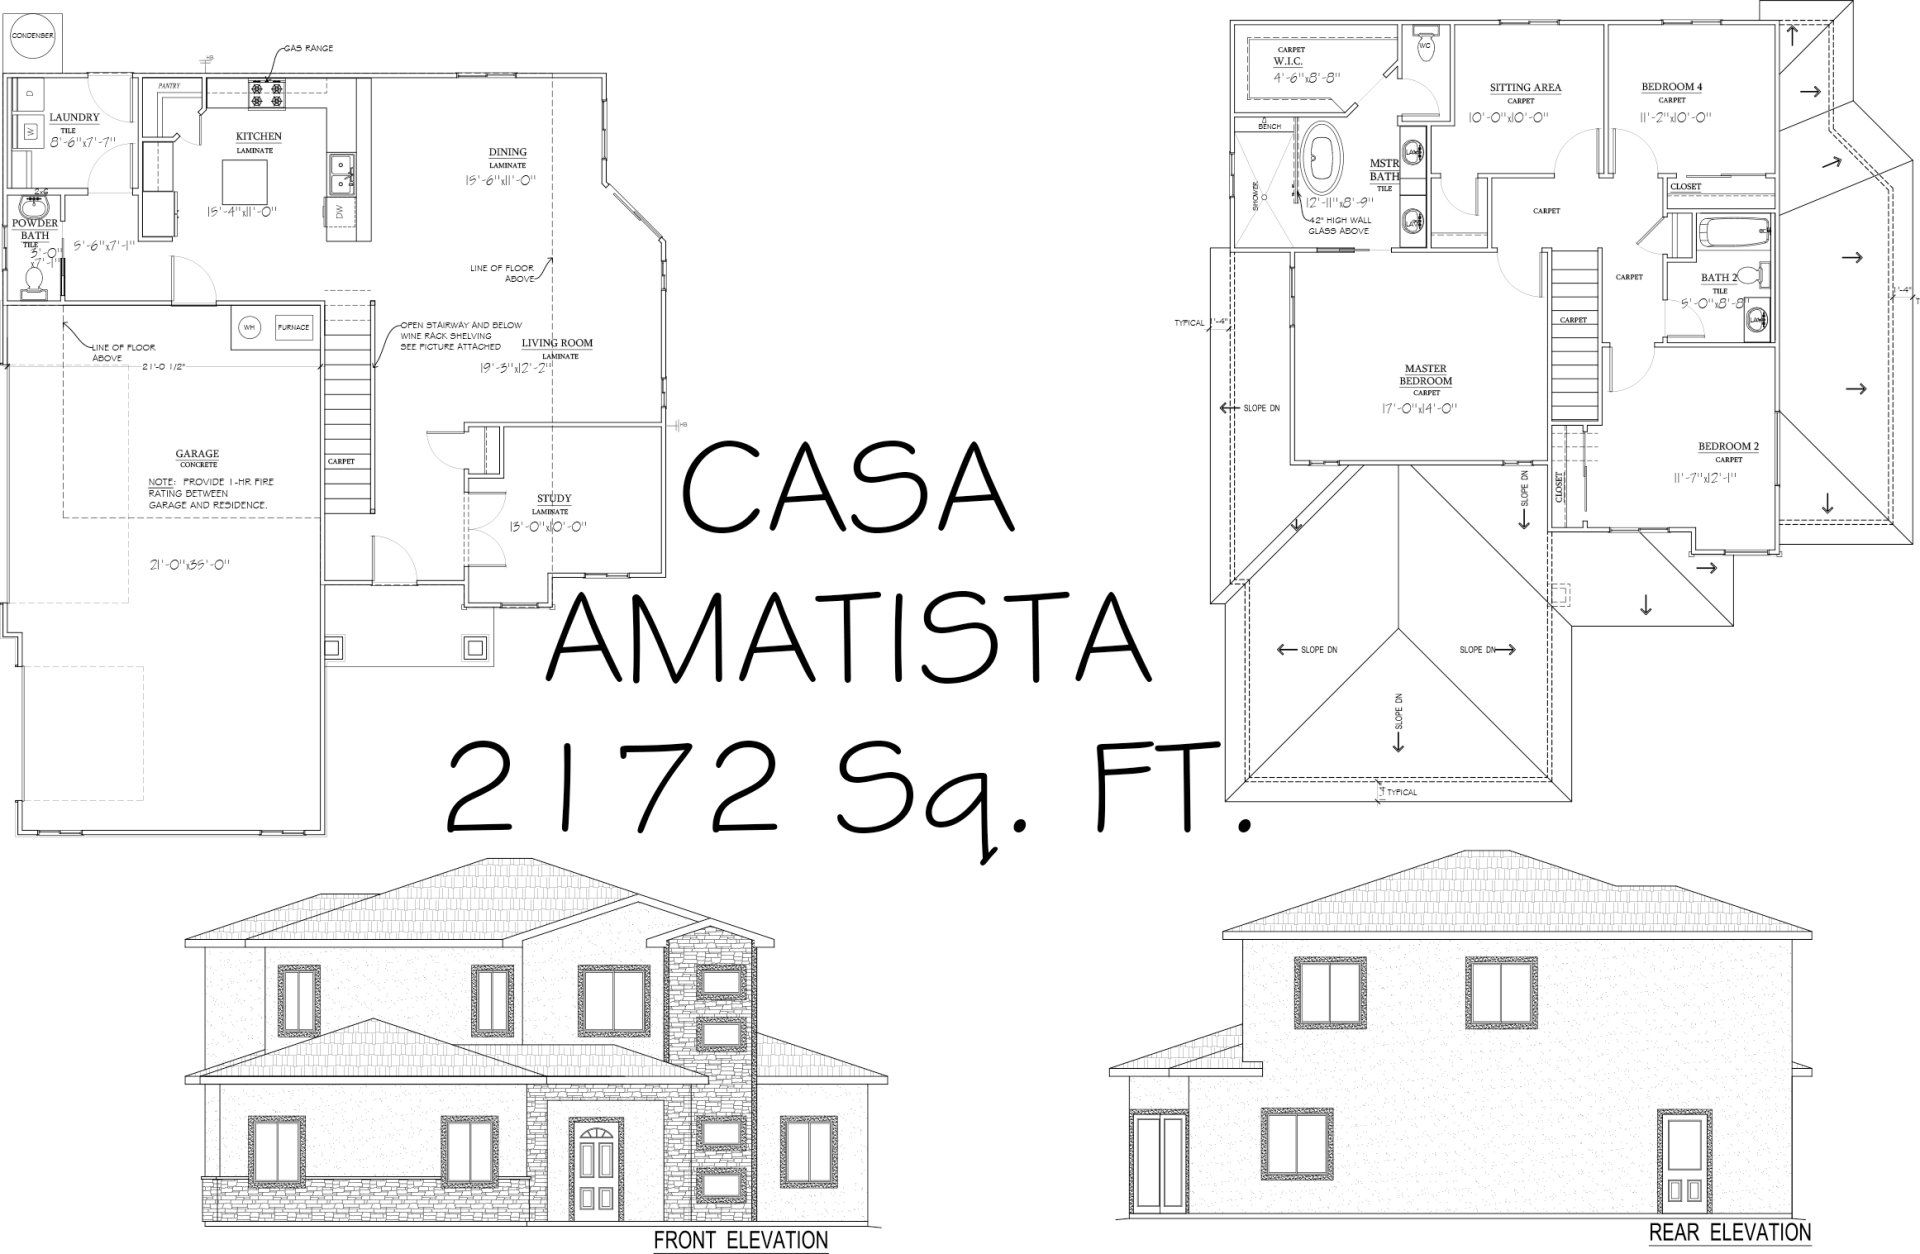 The Amatista customizable floor plan